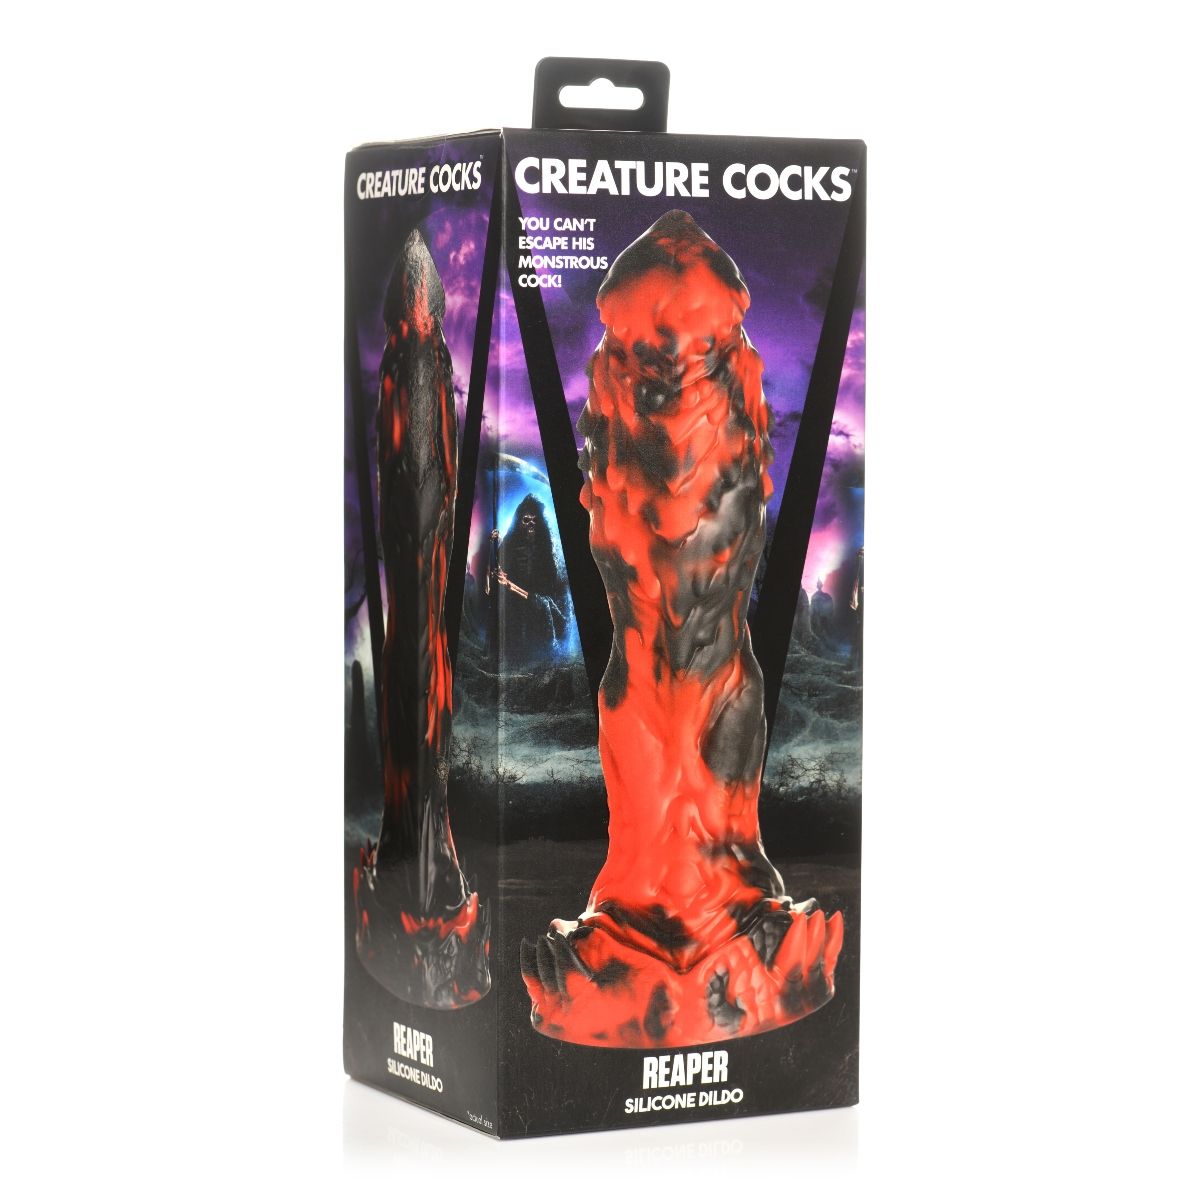 Creature Cocks Reaper Silicone Dildo Red Black - Simply Pleasure